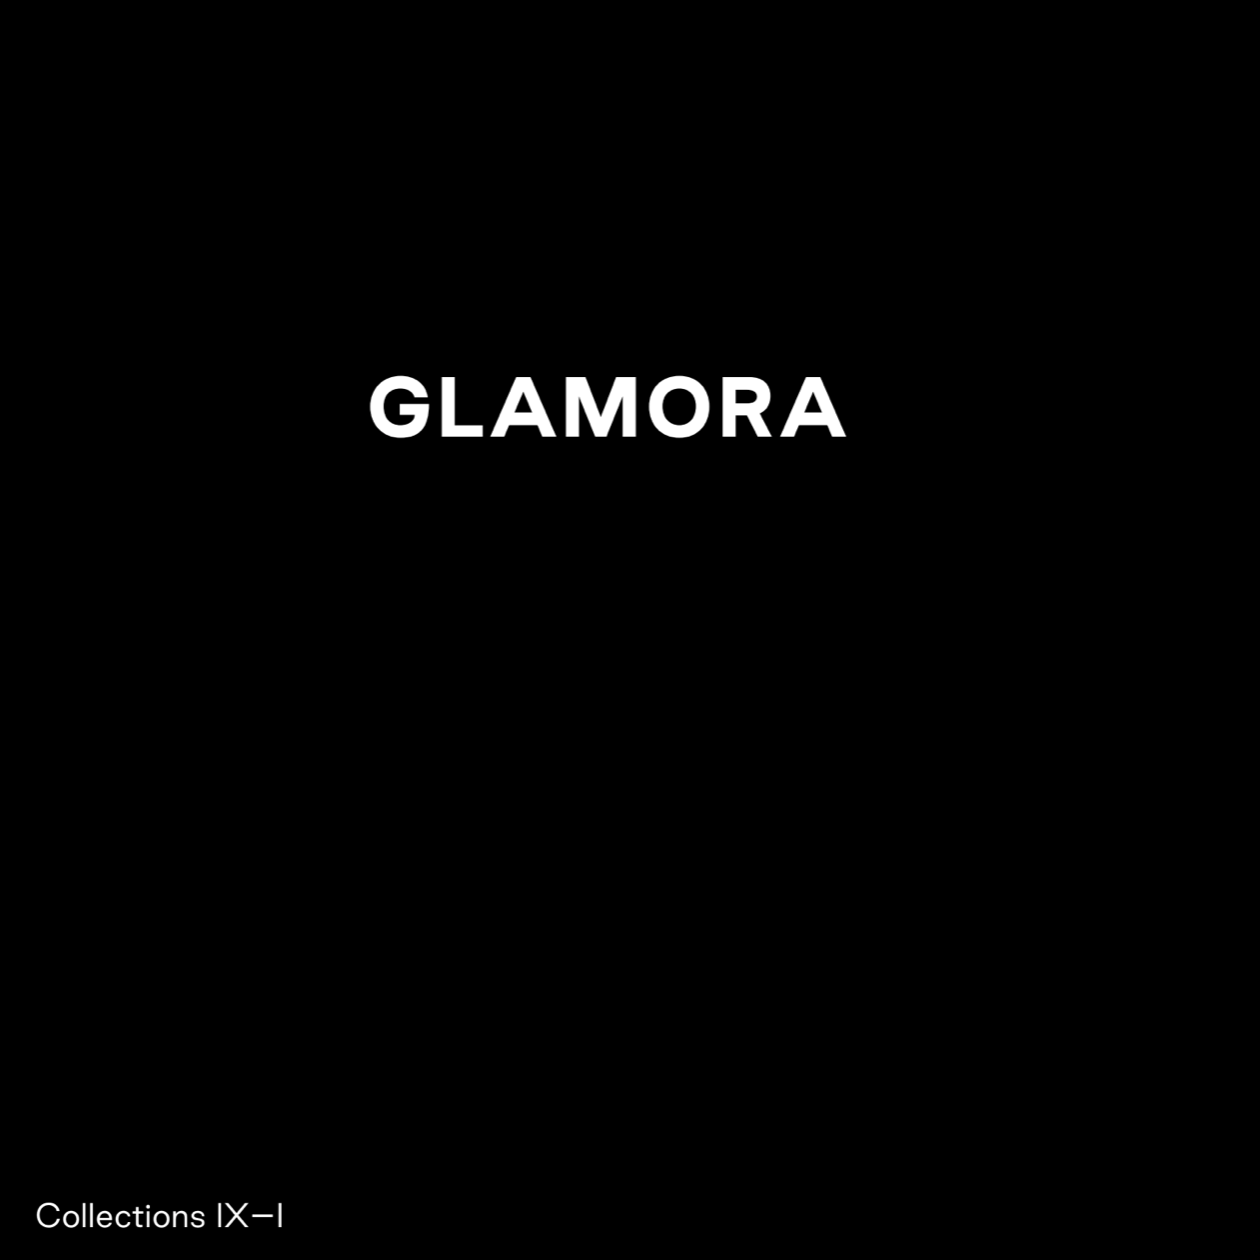 Katalóg tapiet značky Glamora